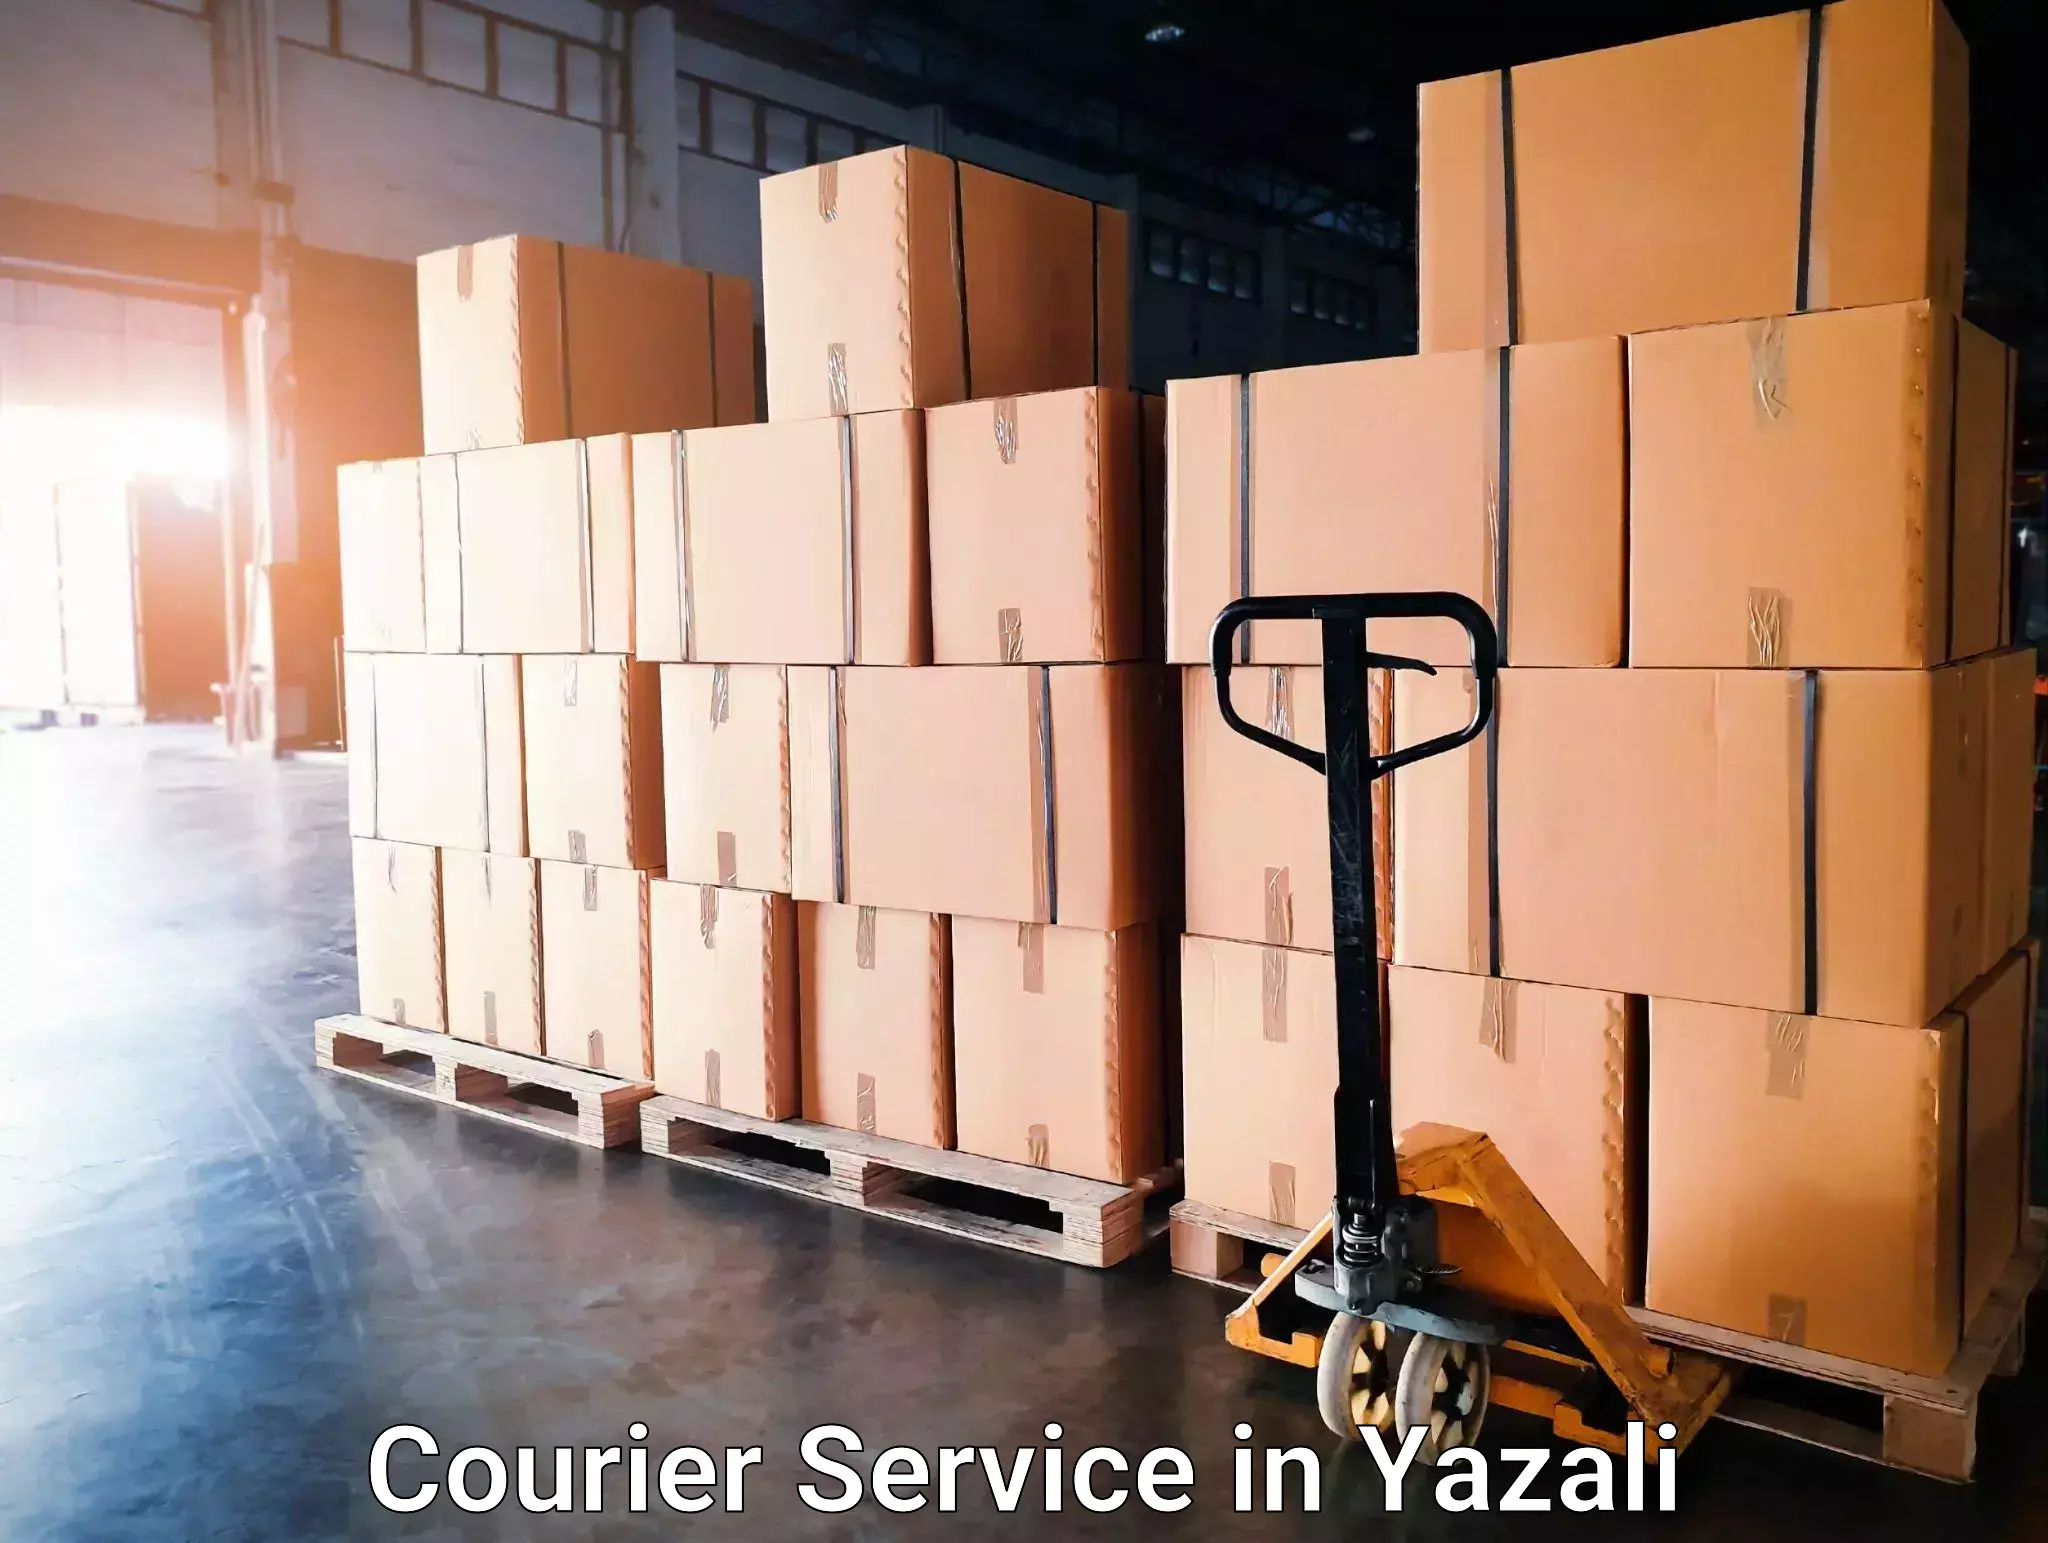 Flexible delivery scheduling in Yazali